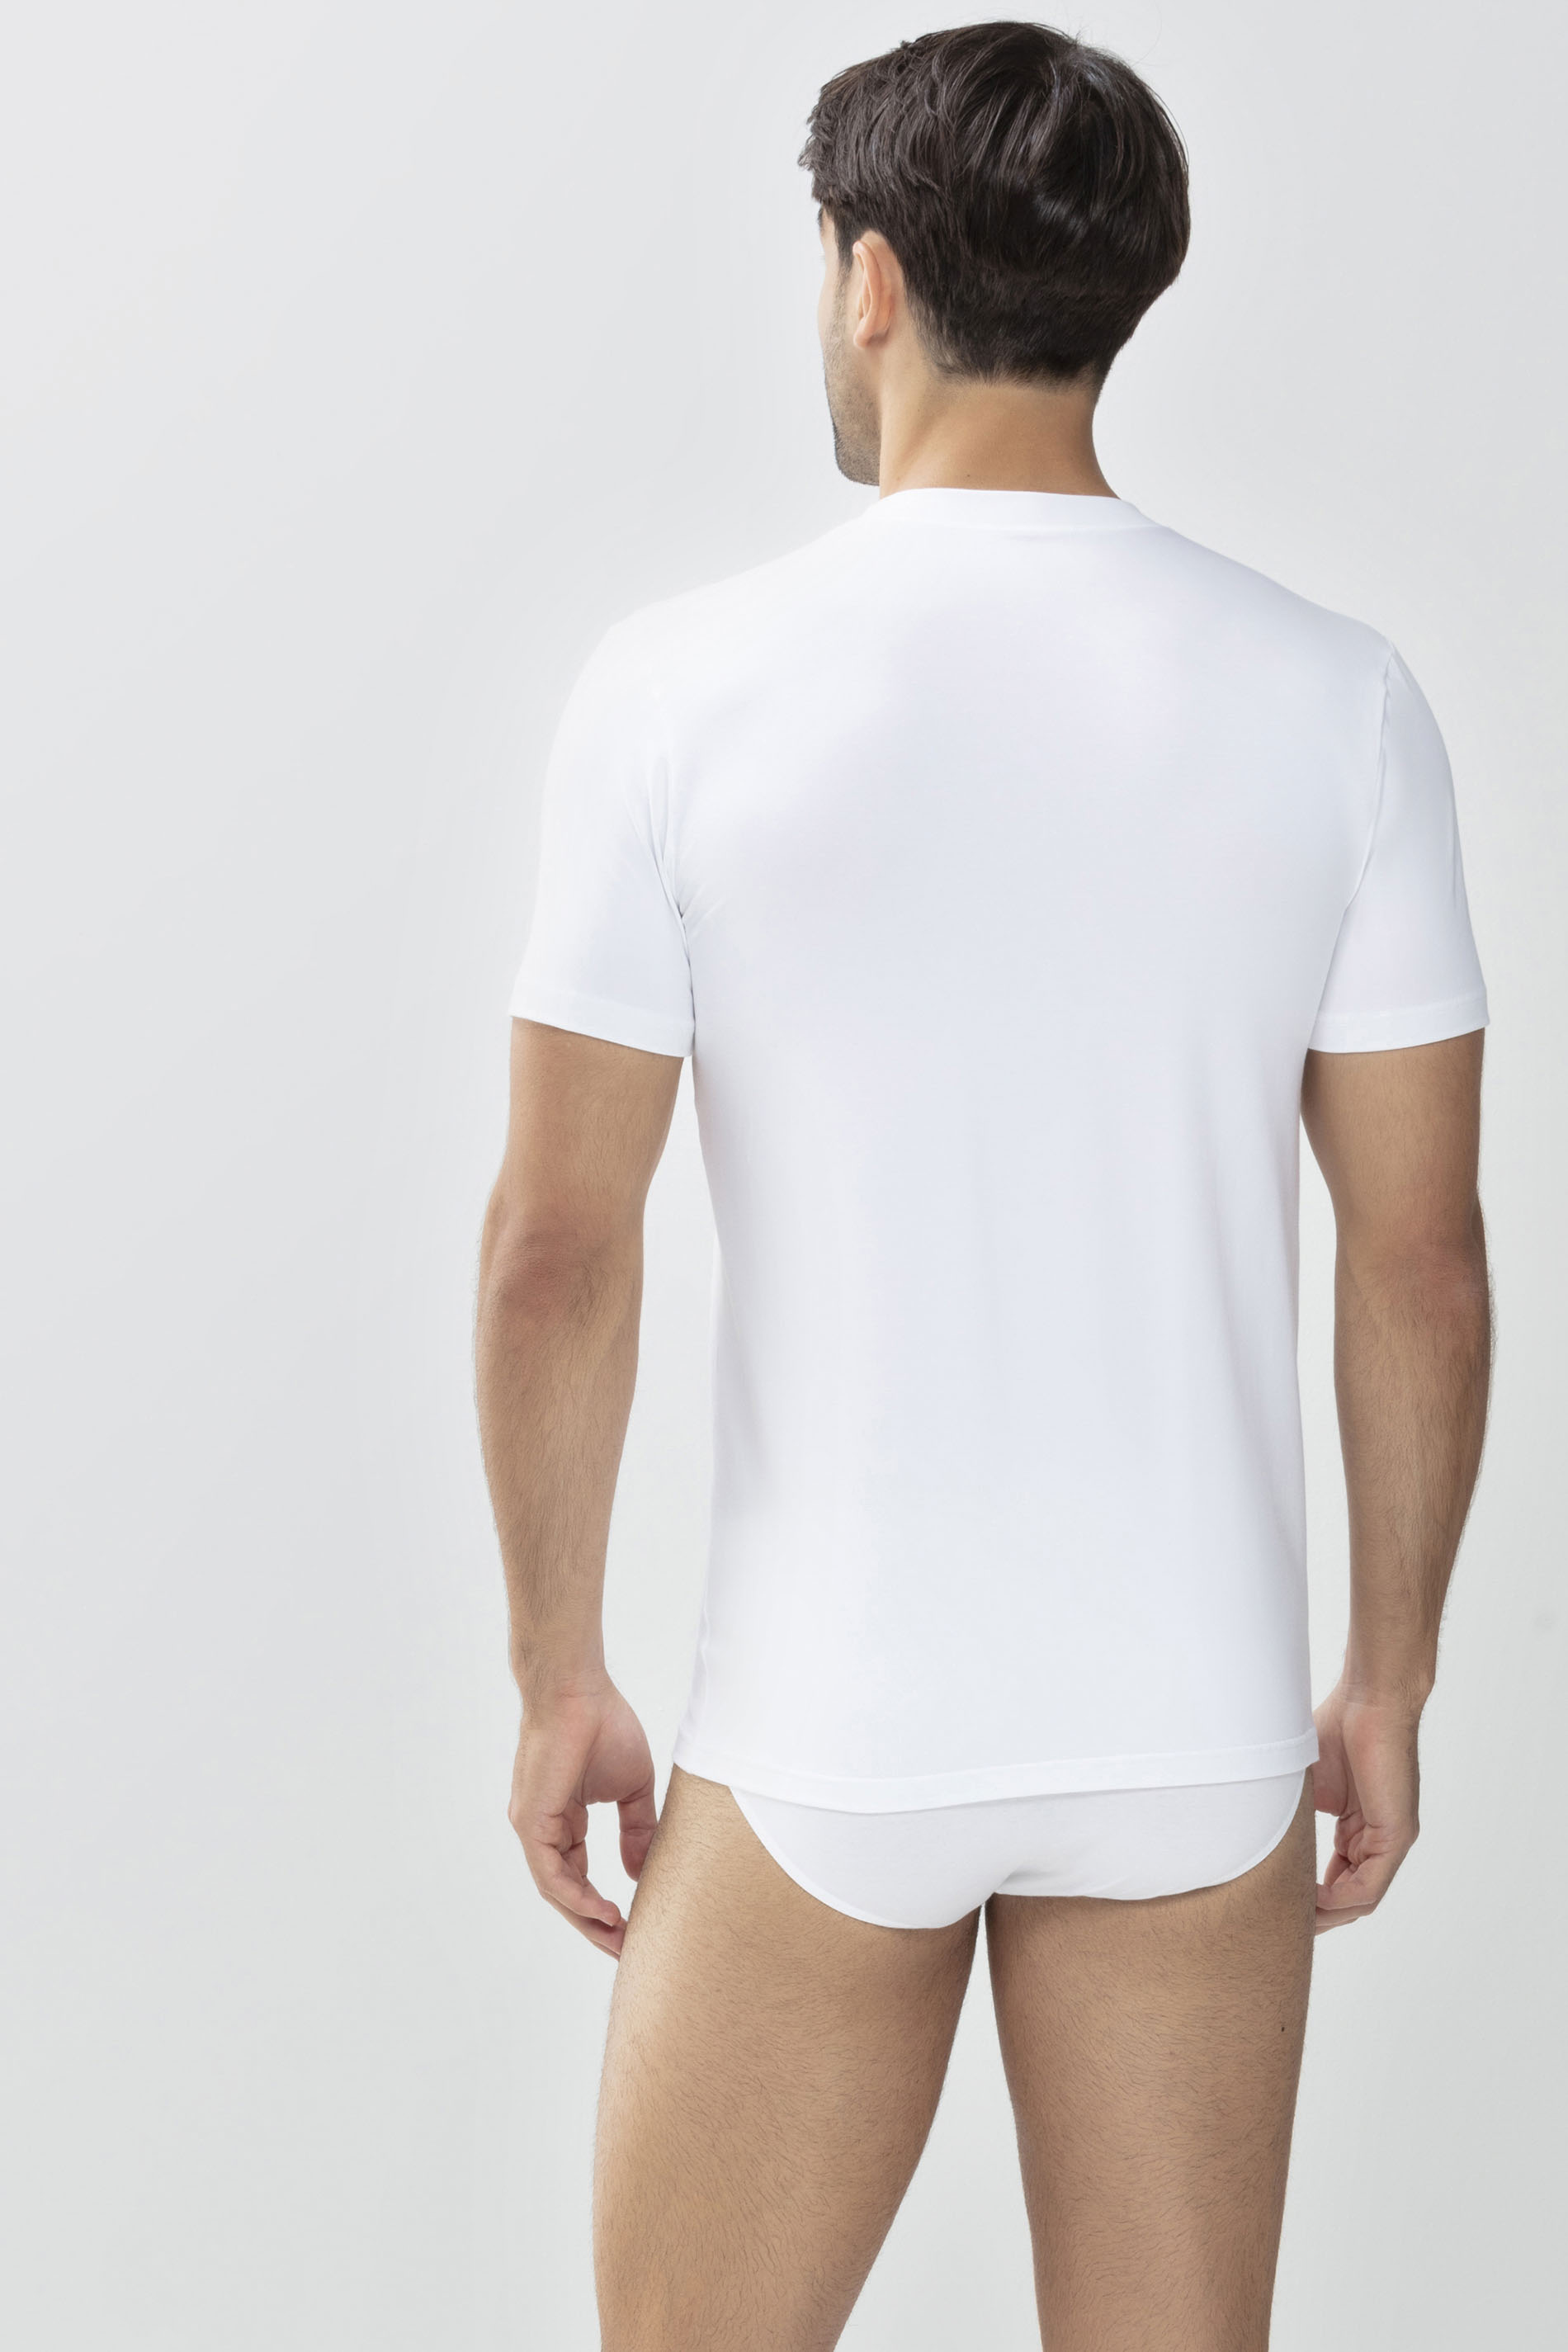 Shirt Wit Serie Dry Cotton Achteraanzicht | mey®